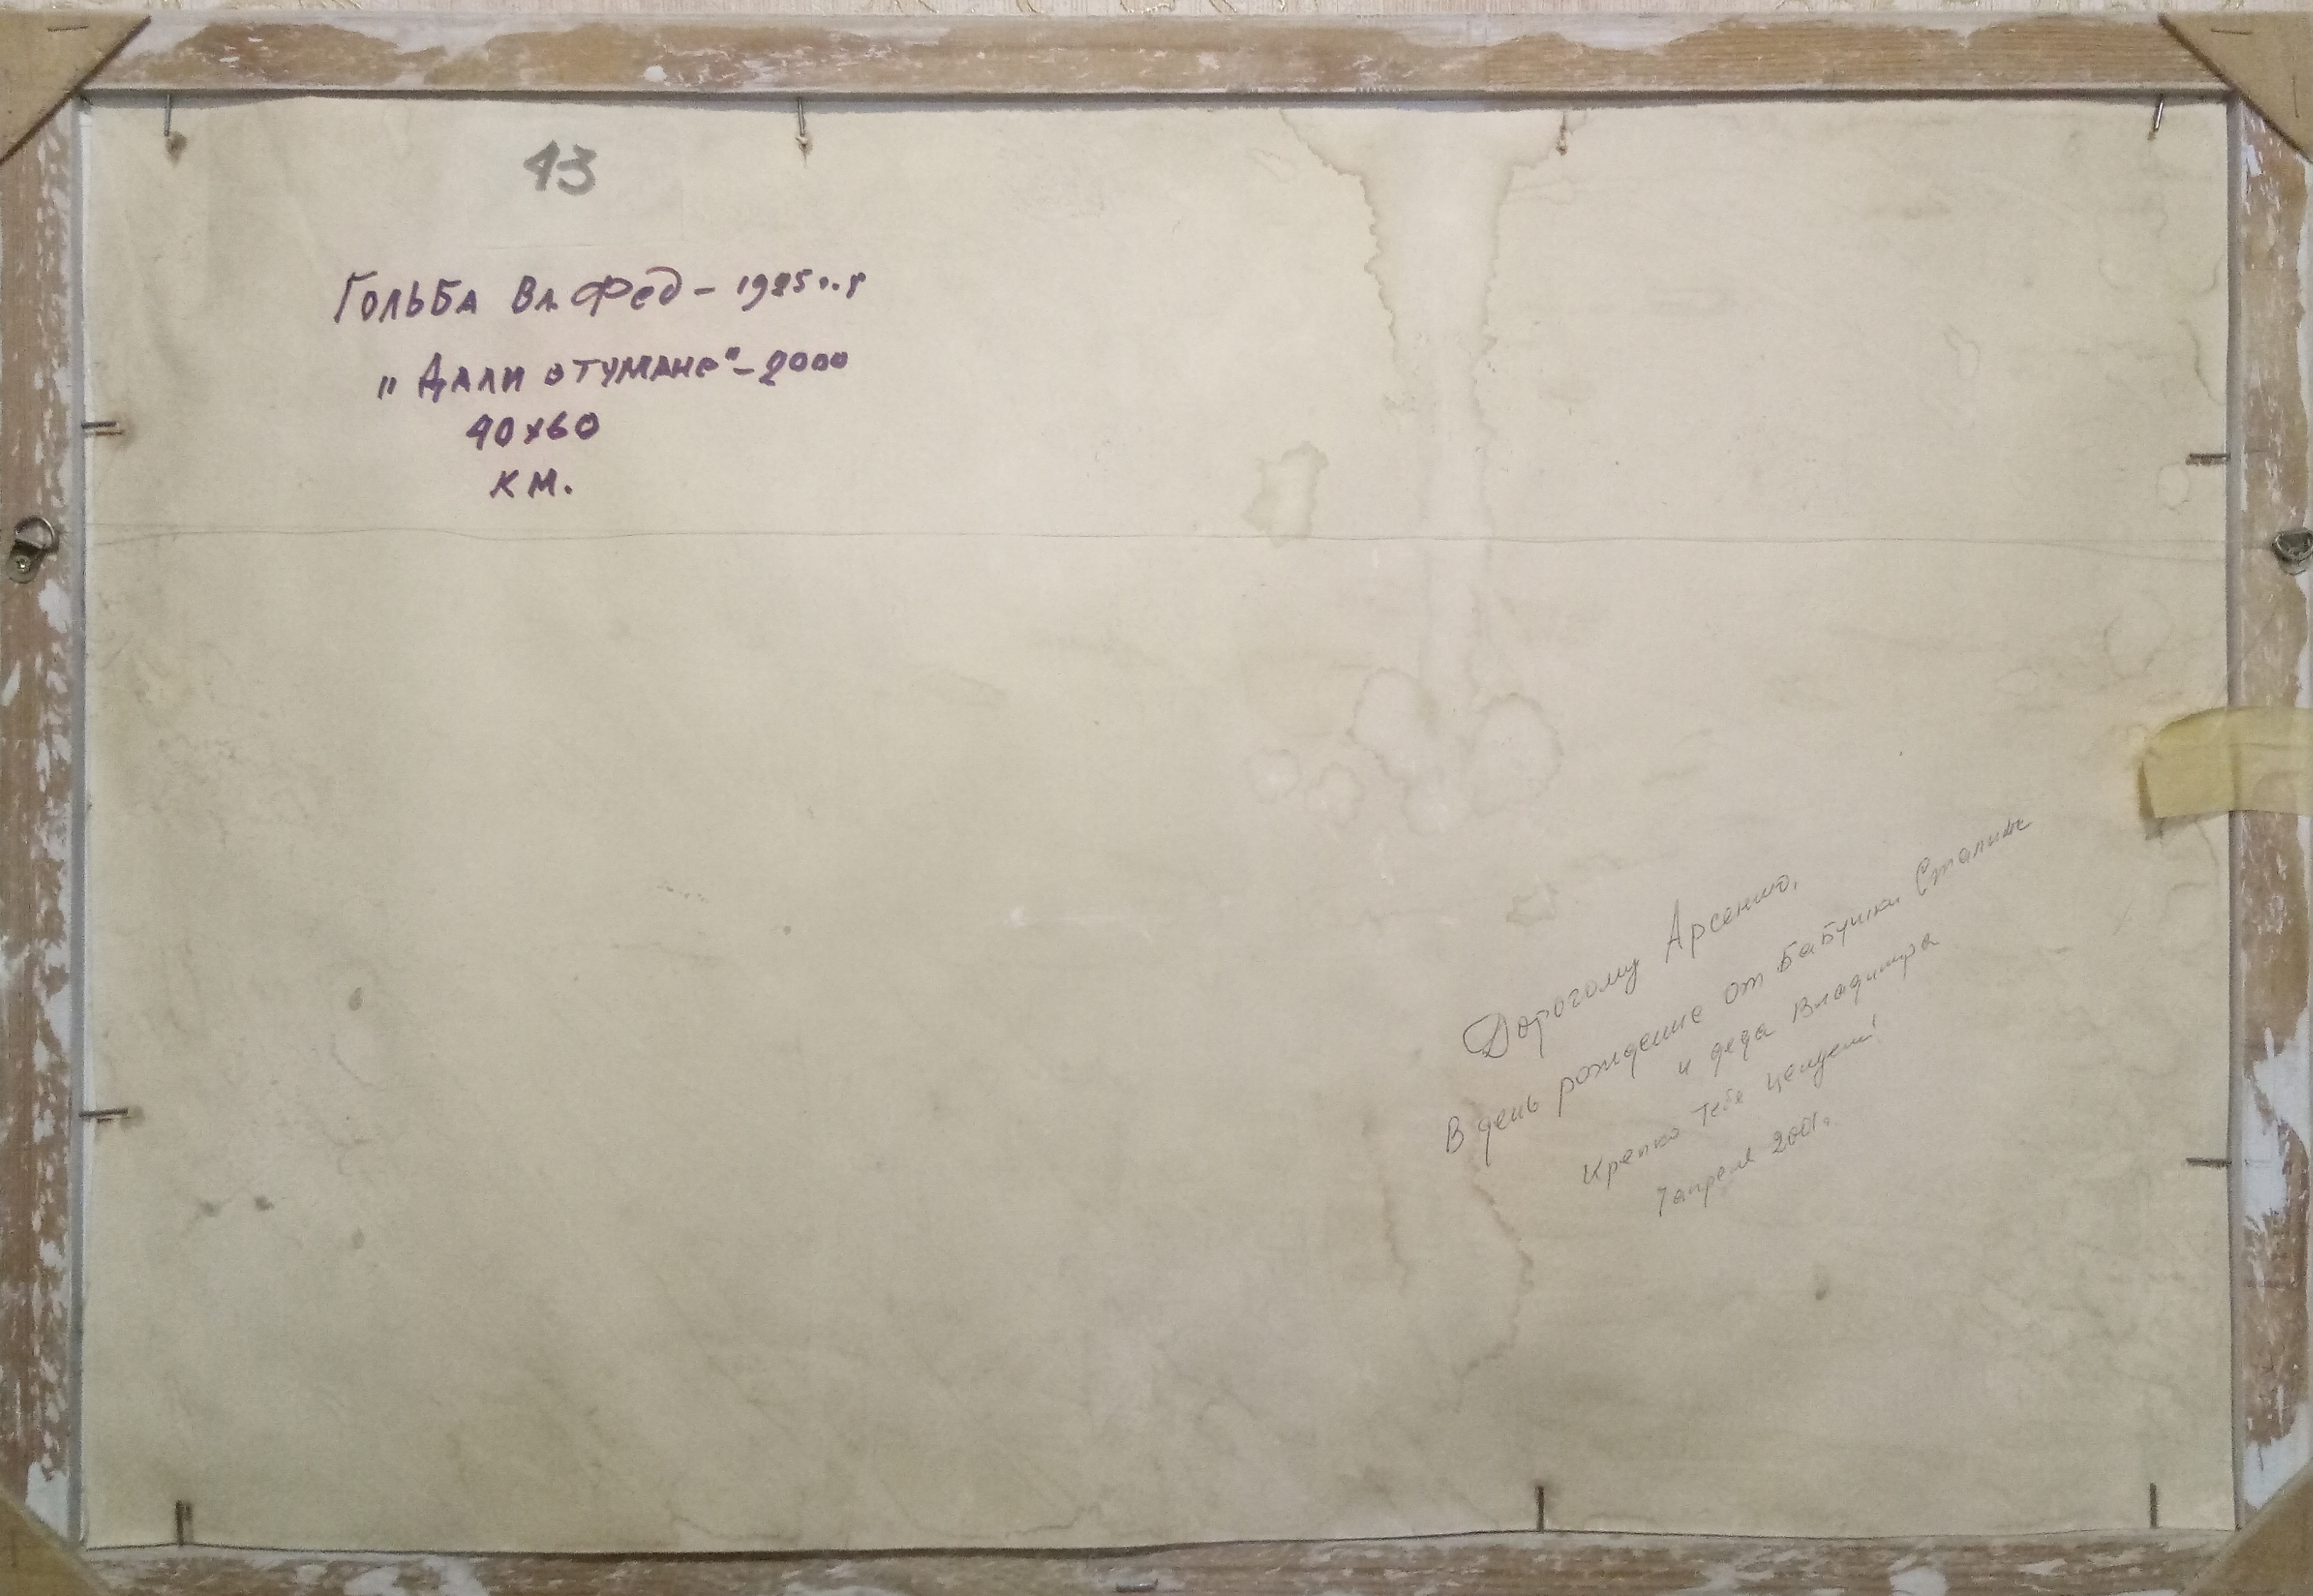  Гольба В.Ф. Дали в тумане  40-60 см., картон, масло 2000  - 2